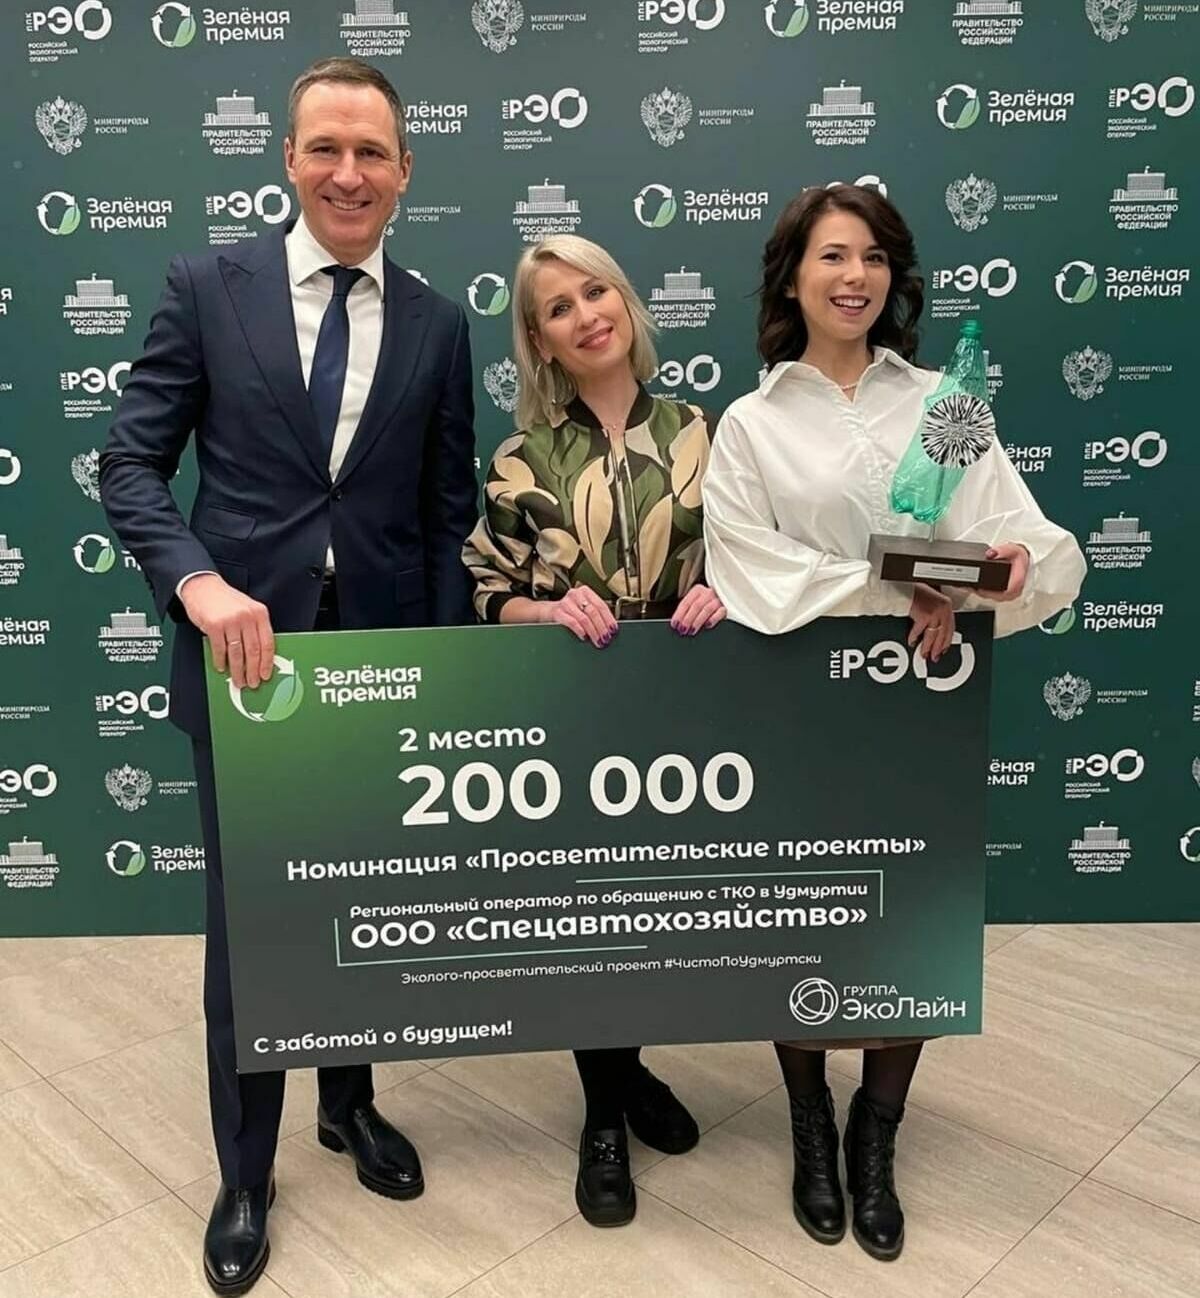 Эколого-просветительский проект «Чисто по-удмуртски» получил «Зелёную премию»